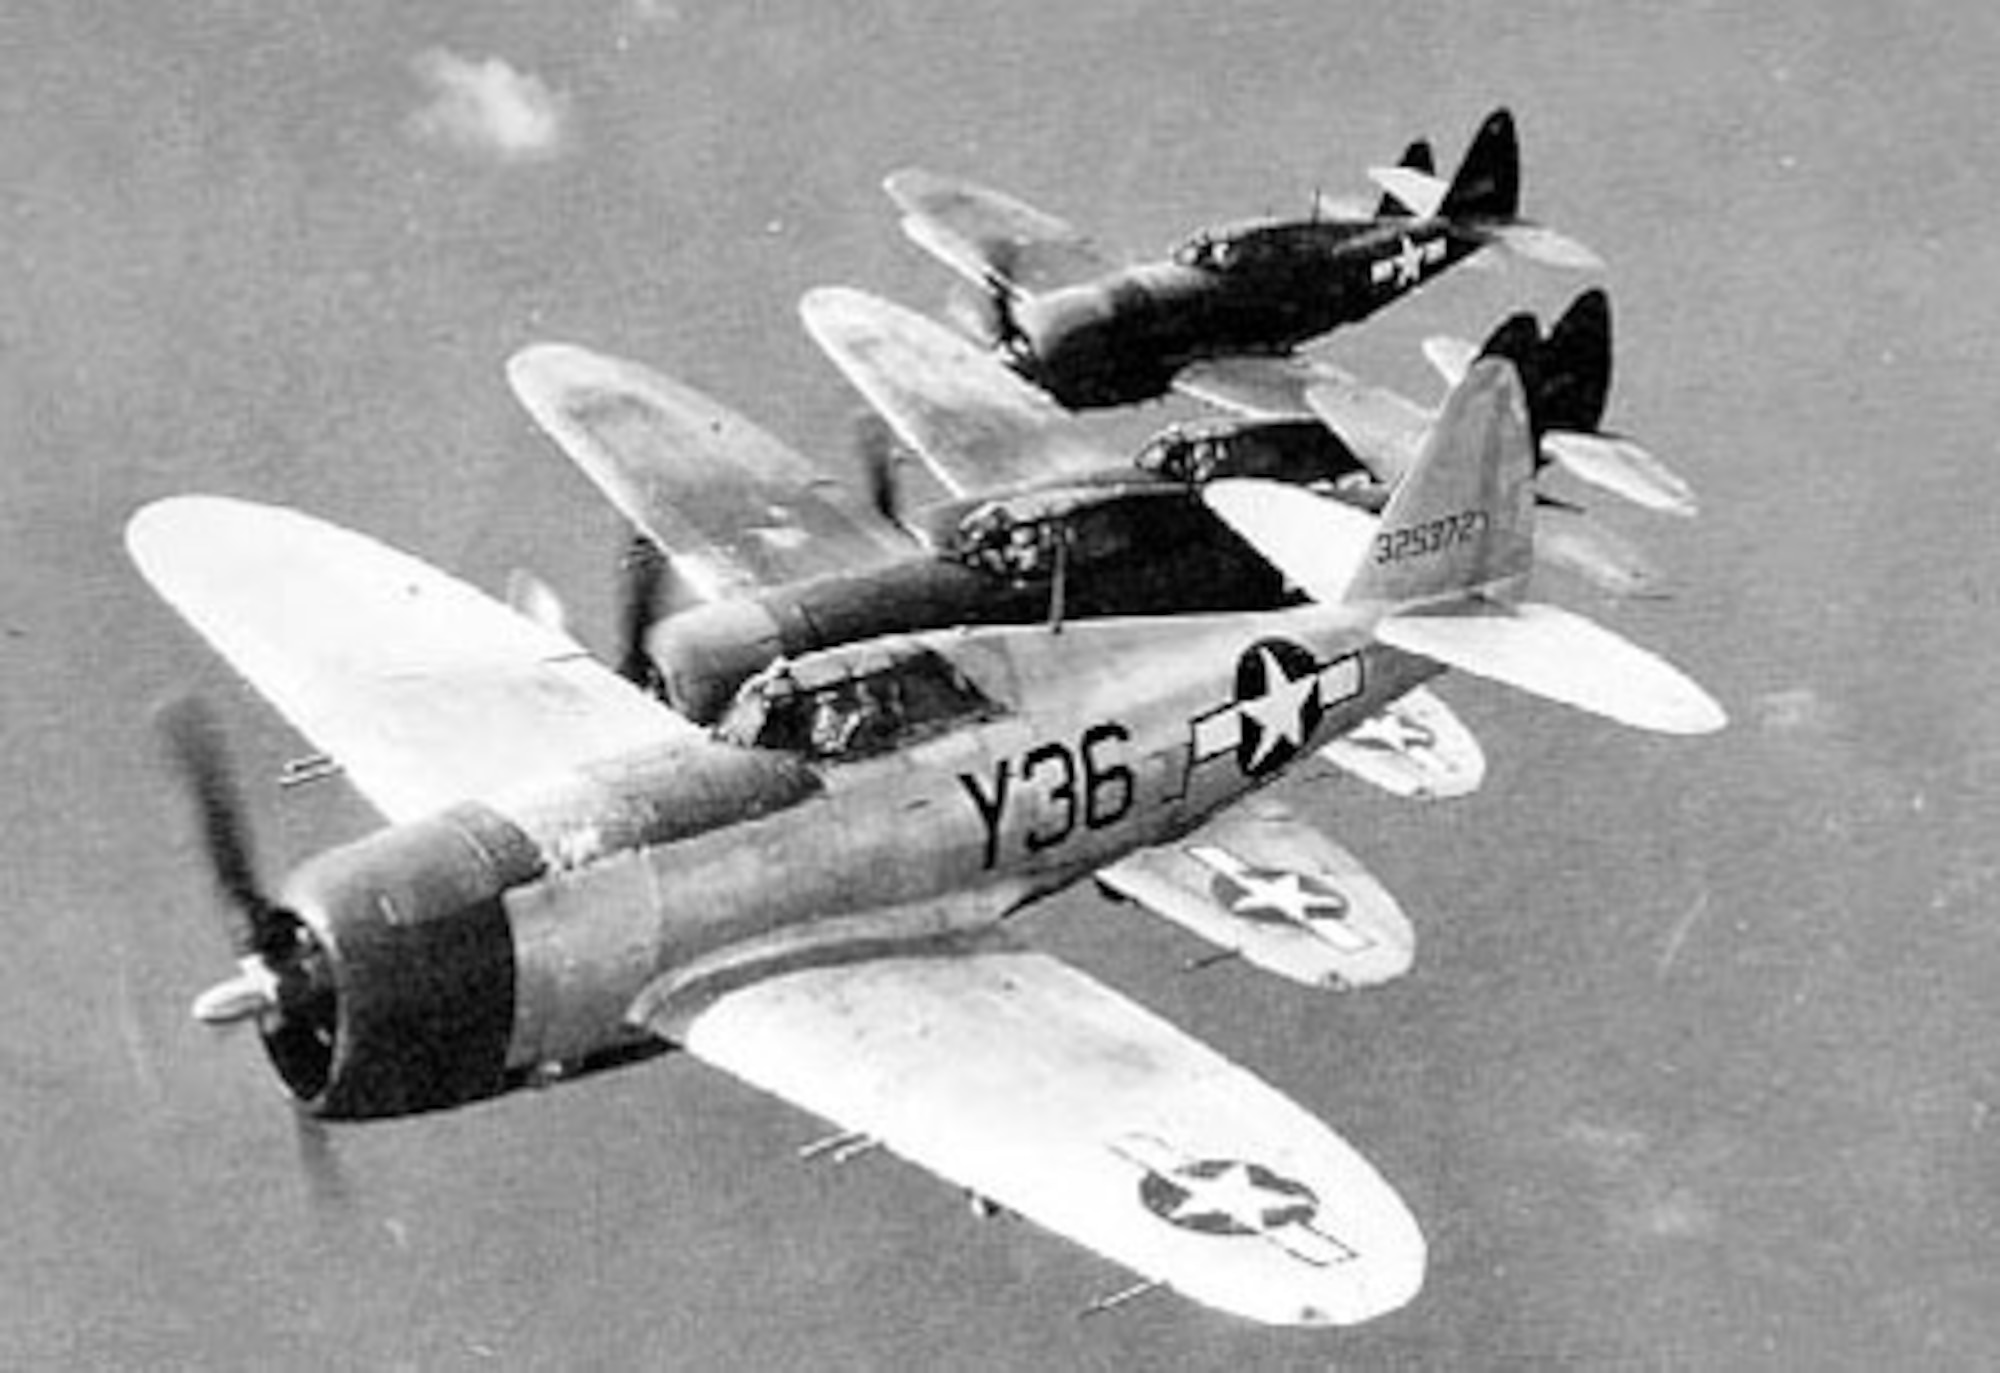 Republic P-47D 5-ship formation (Y36 is P-47D-21-RA, S/N 43-25372). (U.S. Air Force photo)